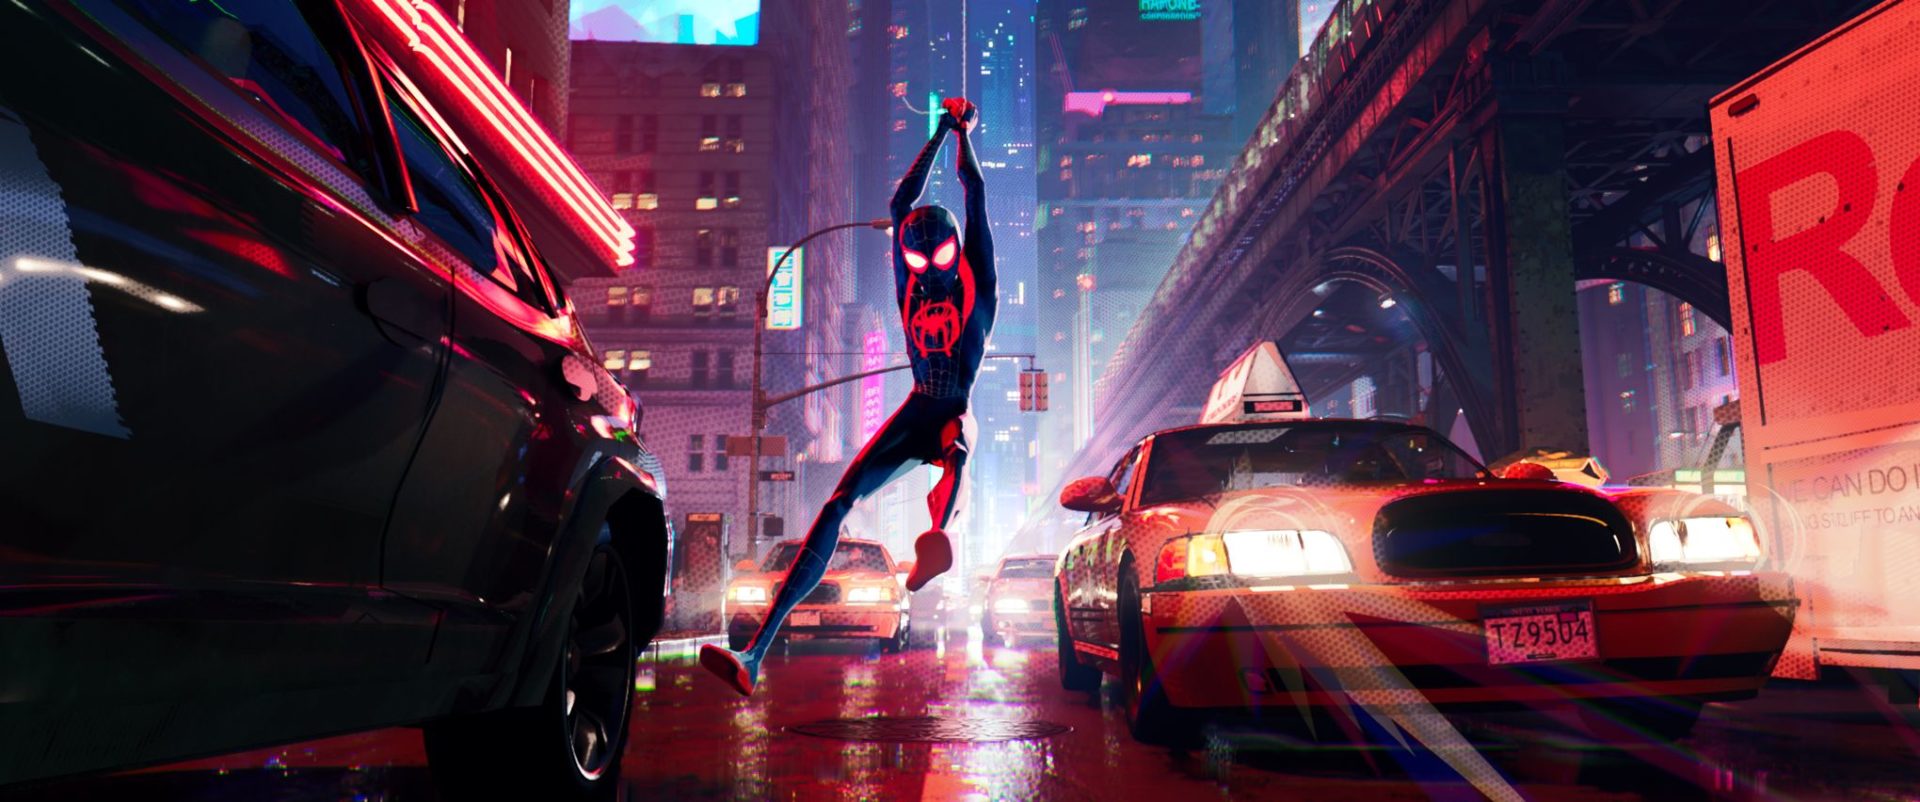 Miles Morales en acción en “Hombre Araña: Un nuevo universo” Credit Sony Pictures Releasing